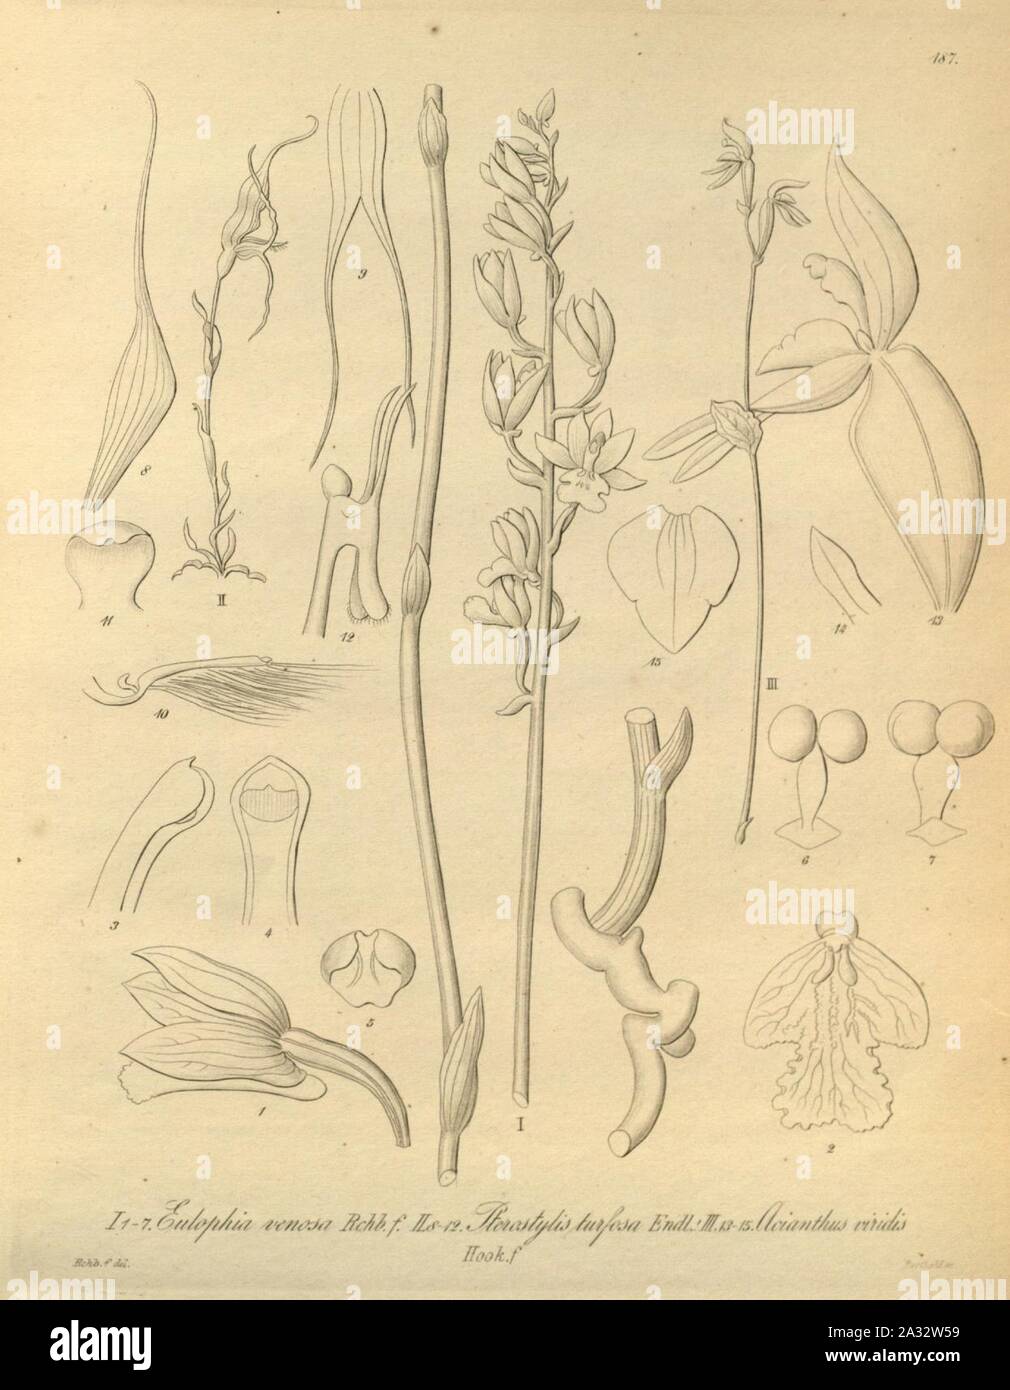 Eulophia venosa - Pterostylis turfosa - Townsonia viridis (as Acianthus viridis) - Xenia 2 pl 187. Stock Photo